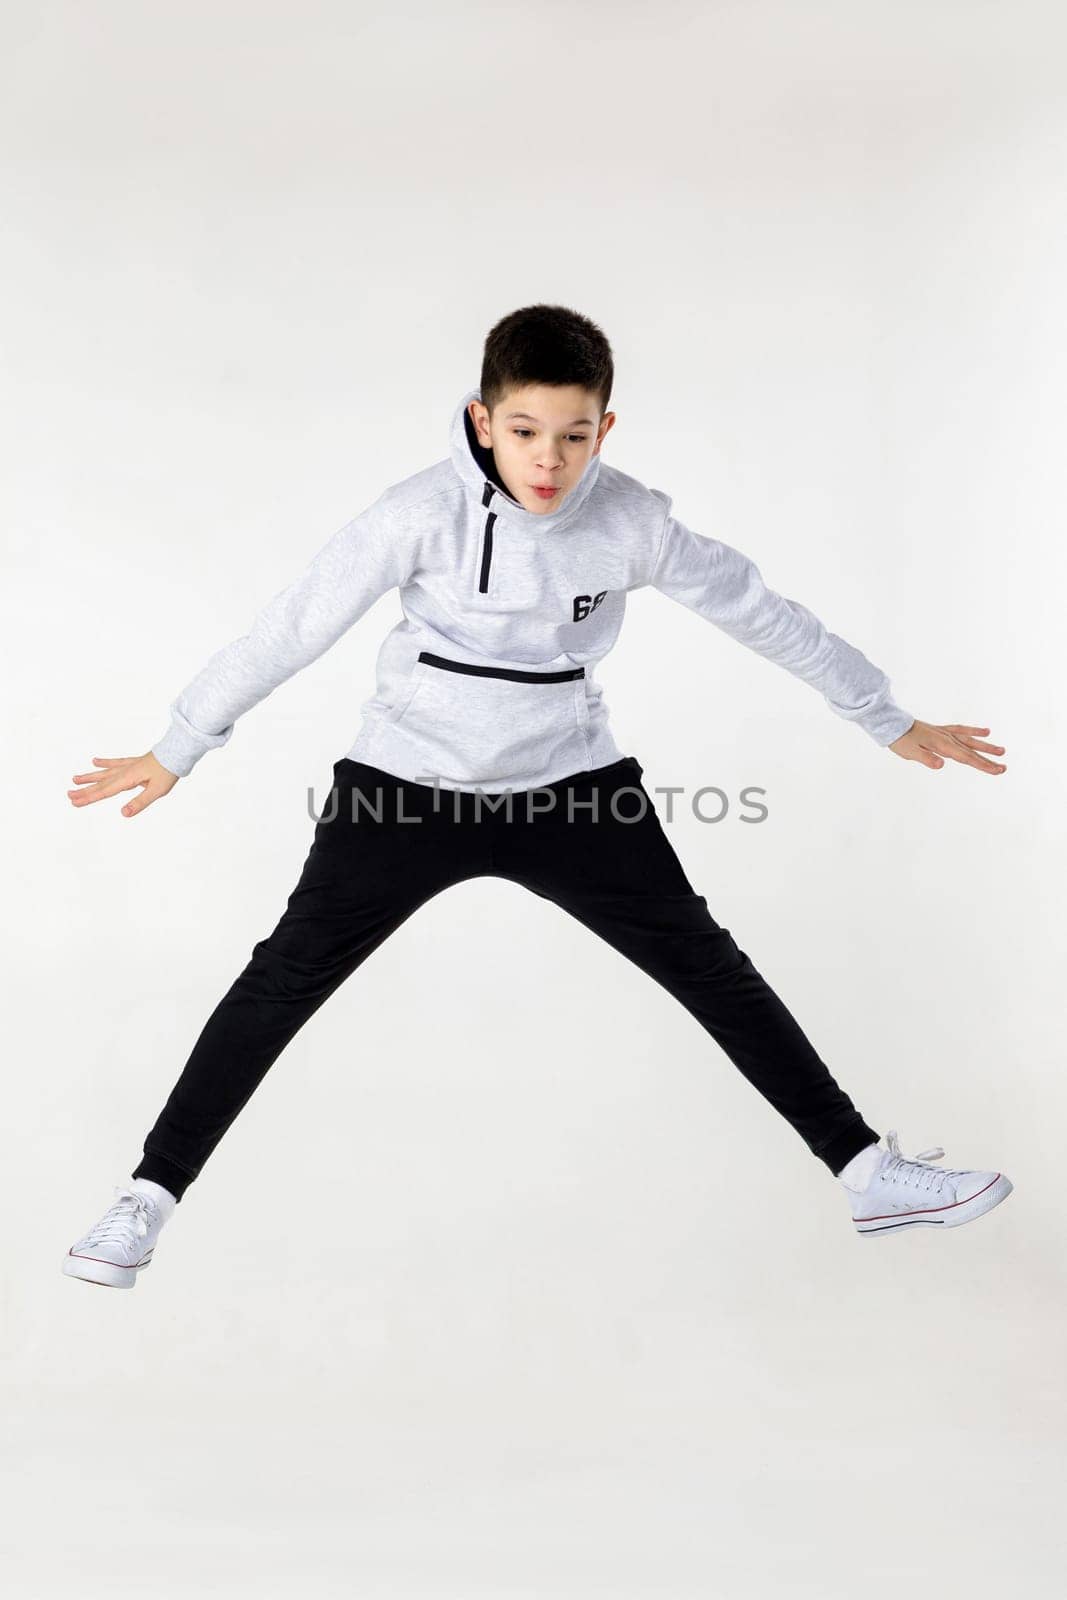 Little boy jumping by erstudio